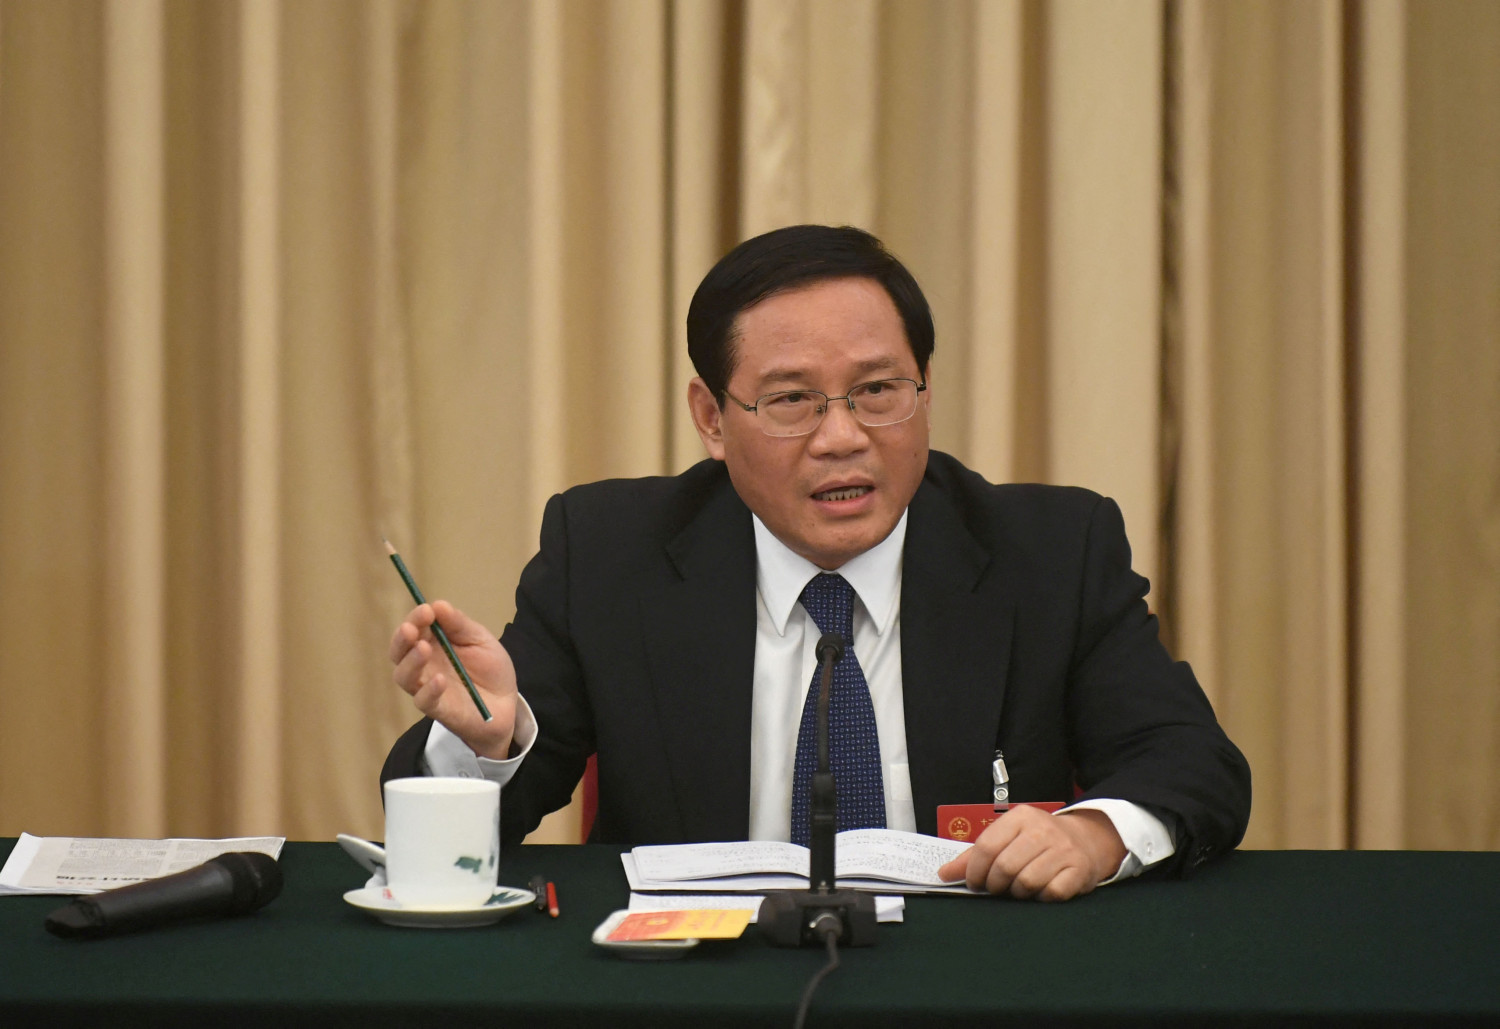 li qiang secretaire du parti communiste du jiangsu s exprime lors de la discussion de groupe des delegations du jiangsu pendant le congres national du peuple cnp a pekin 